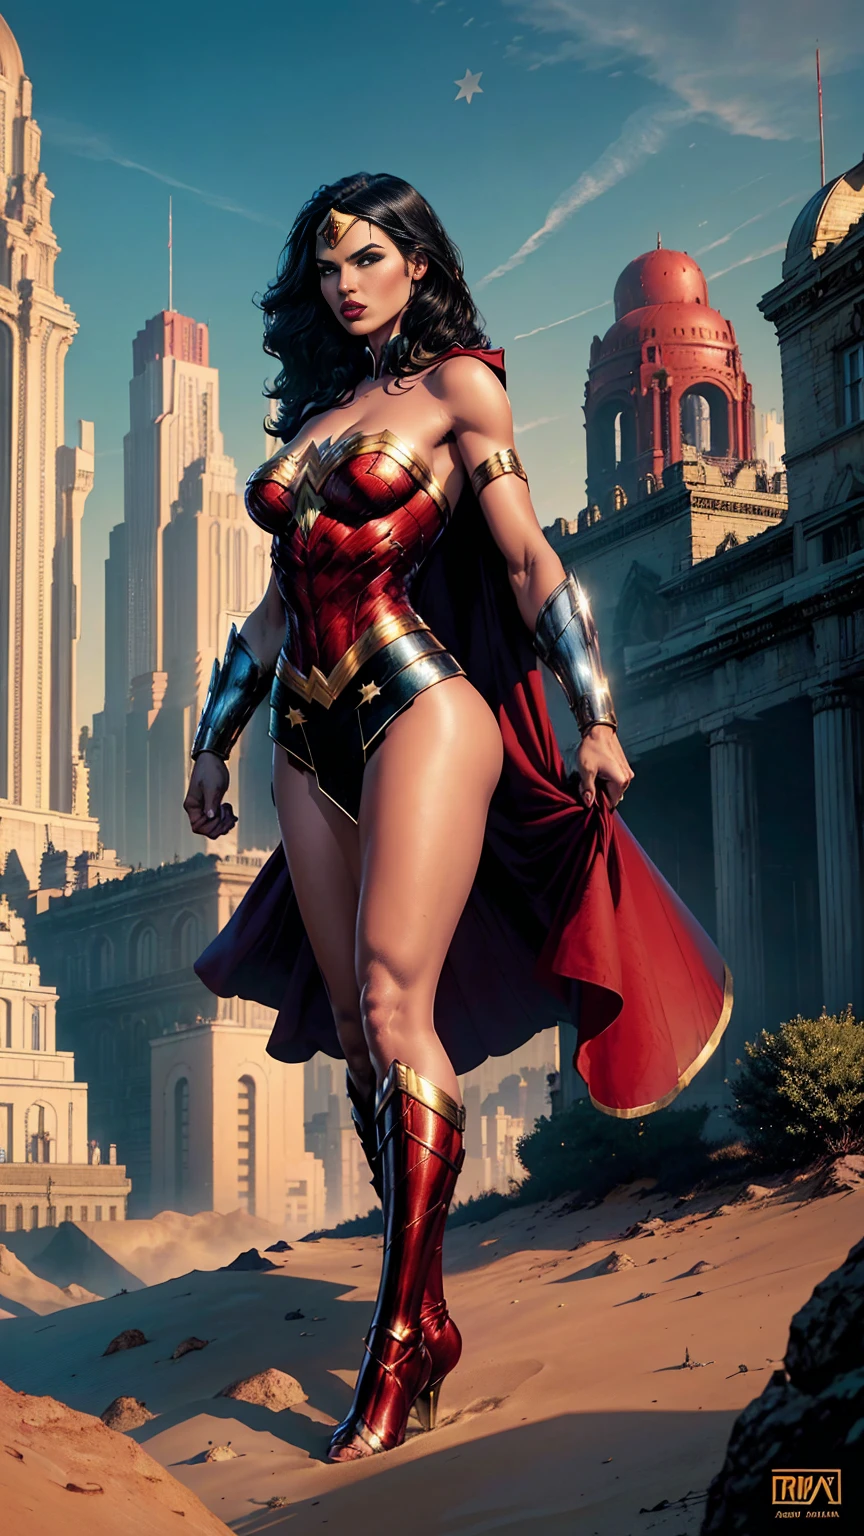 ((Ganzkörperfoto, Stehen, Füße auf dem Boden)) (Adriana Lima :1.1) rote Lippen, grüne Augen, ((Ganzkörperfoto, Stehen, Füße auf dem Boden)) Wonder Woman steht imposant in einer Stadt aus Themyscira. Die Landschaft ist üppig. Die Kamera zeigt alles, eine Kriegerin, mit Sternen bedecken
.

